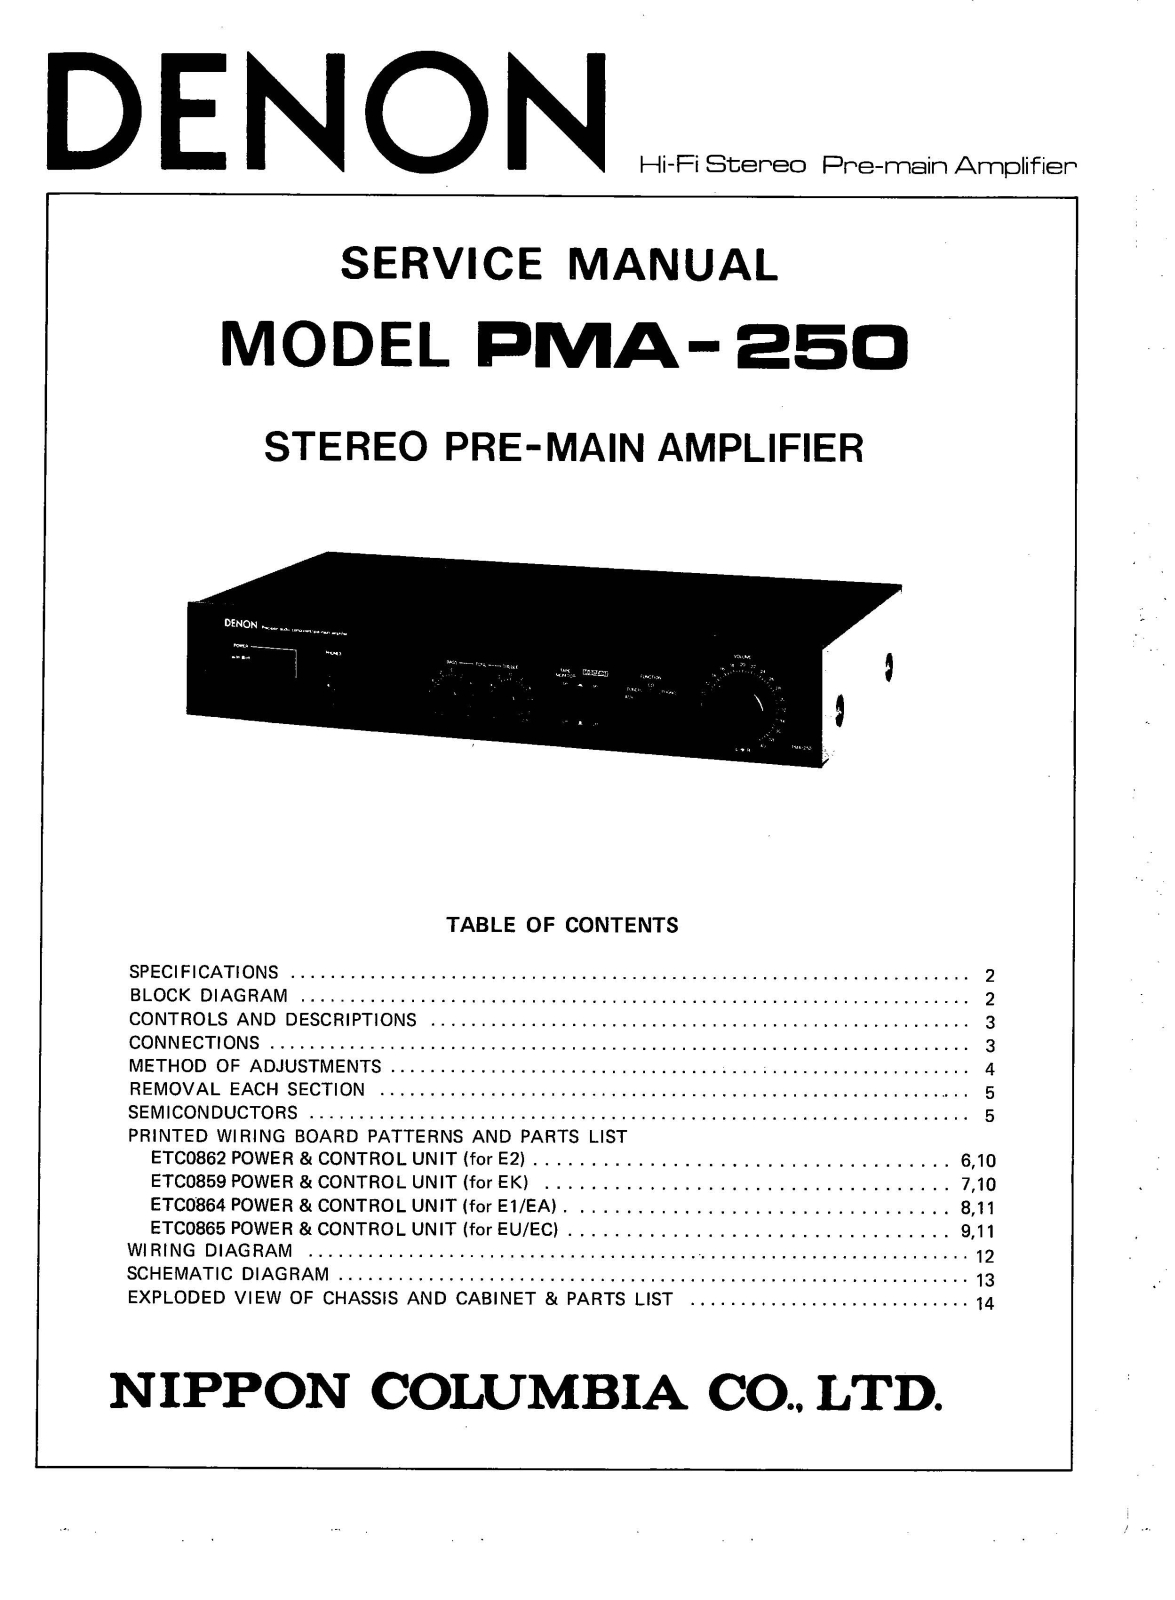 Denon PMA-250 Service Manual